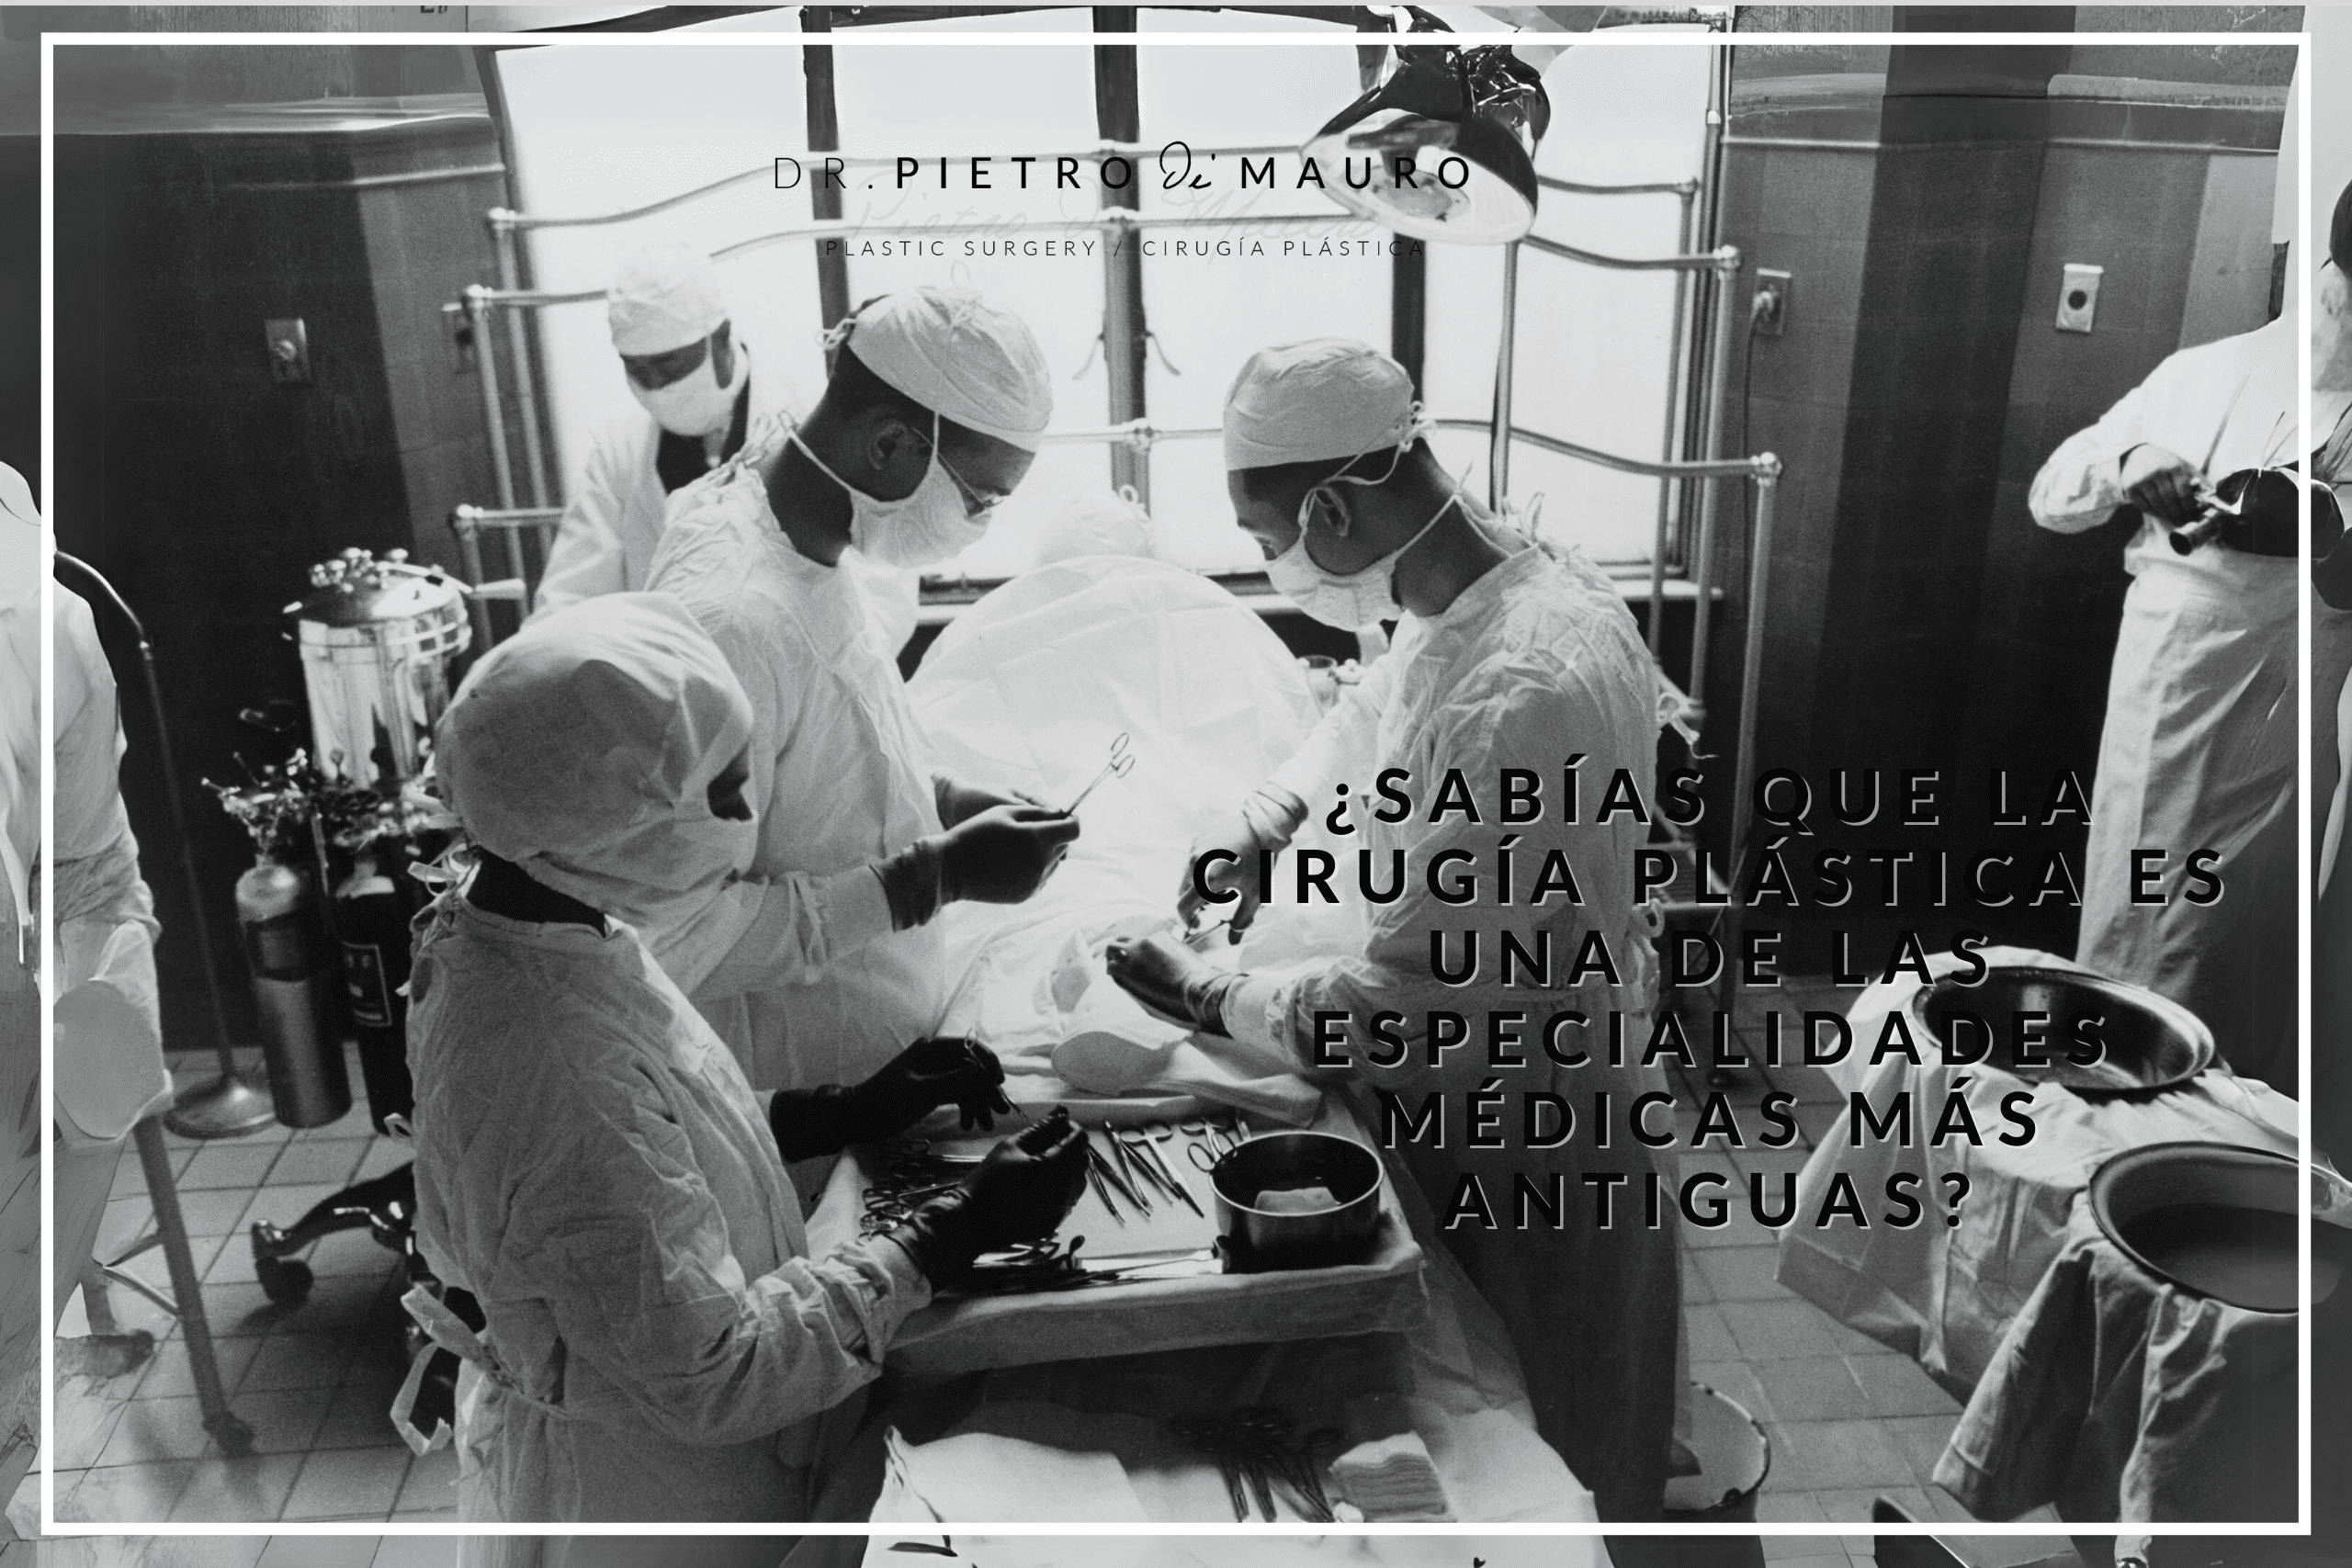 ¿Sabías que la cirugía plástica es una de las especialidades médicas más antiguas? - Pietro di Mauro